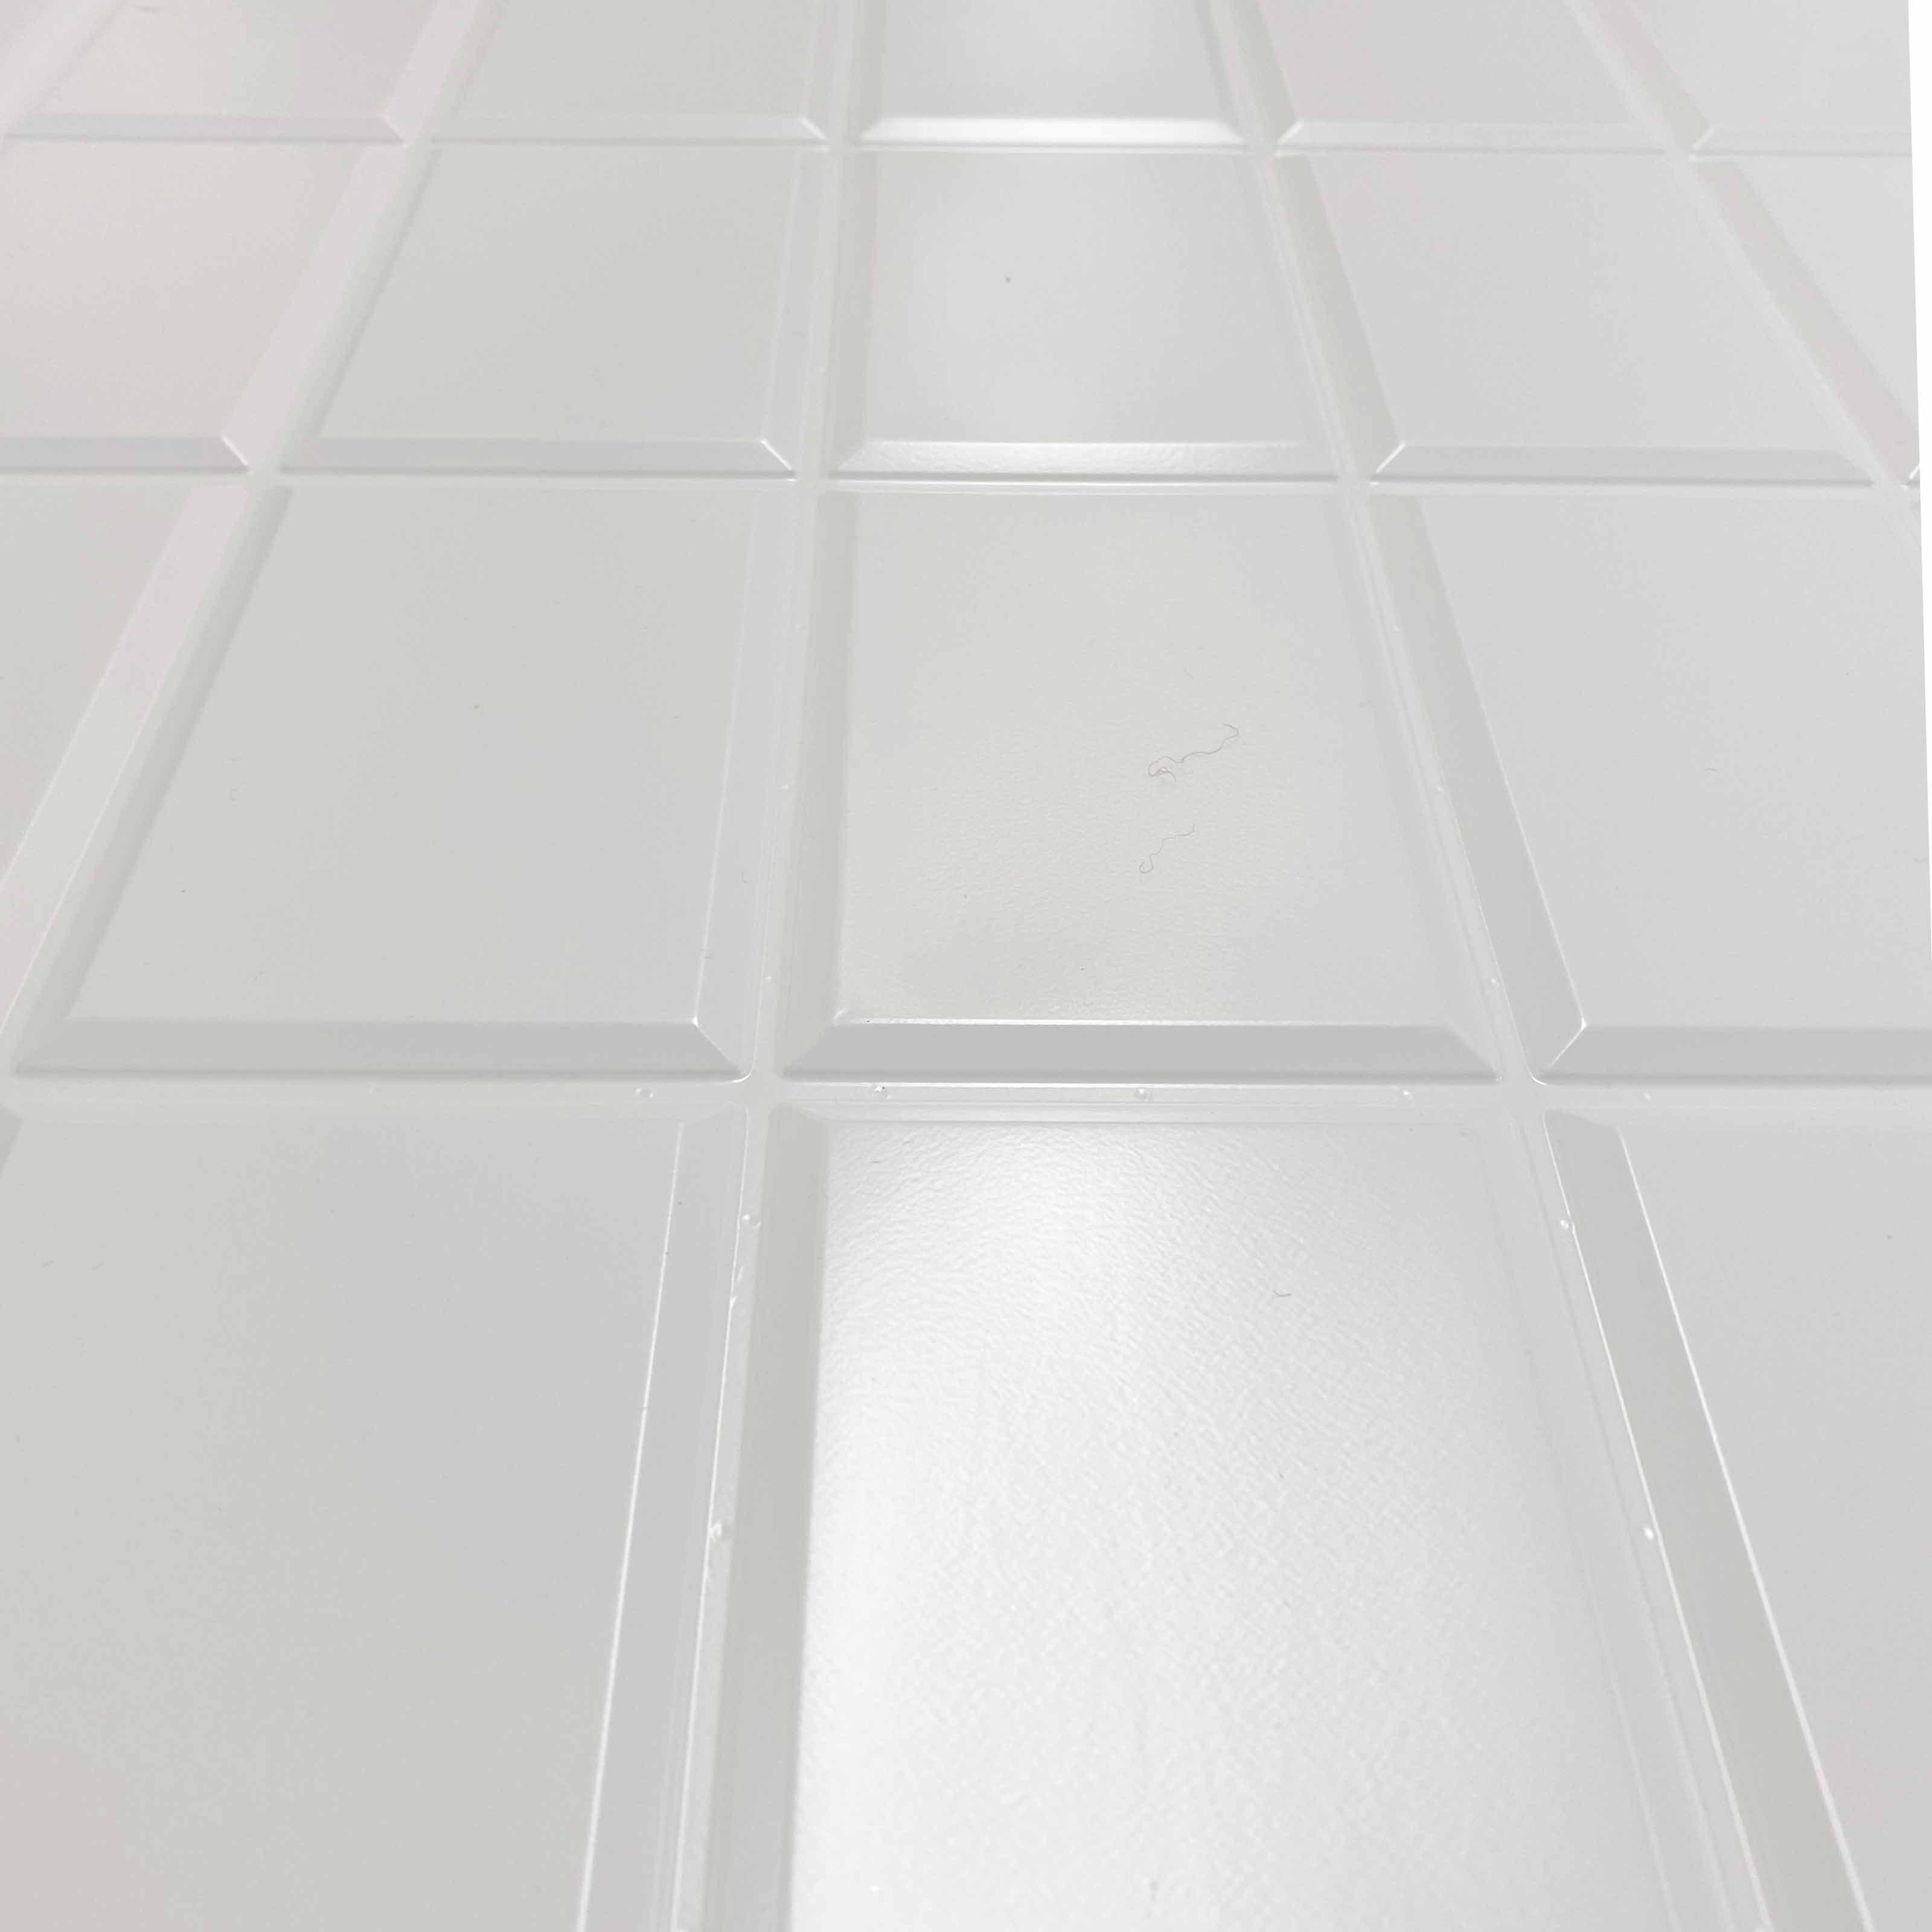 Pannelli 3D Rivestimento a parete in PVC effetto pietra,mattoni,ceramiche, legno Realistici e isolanti. Eternal Parquet